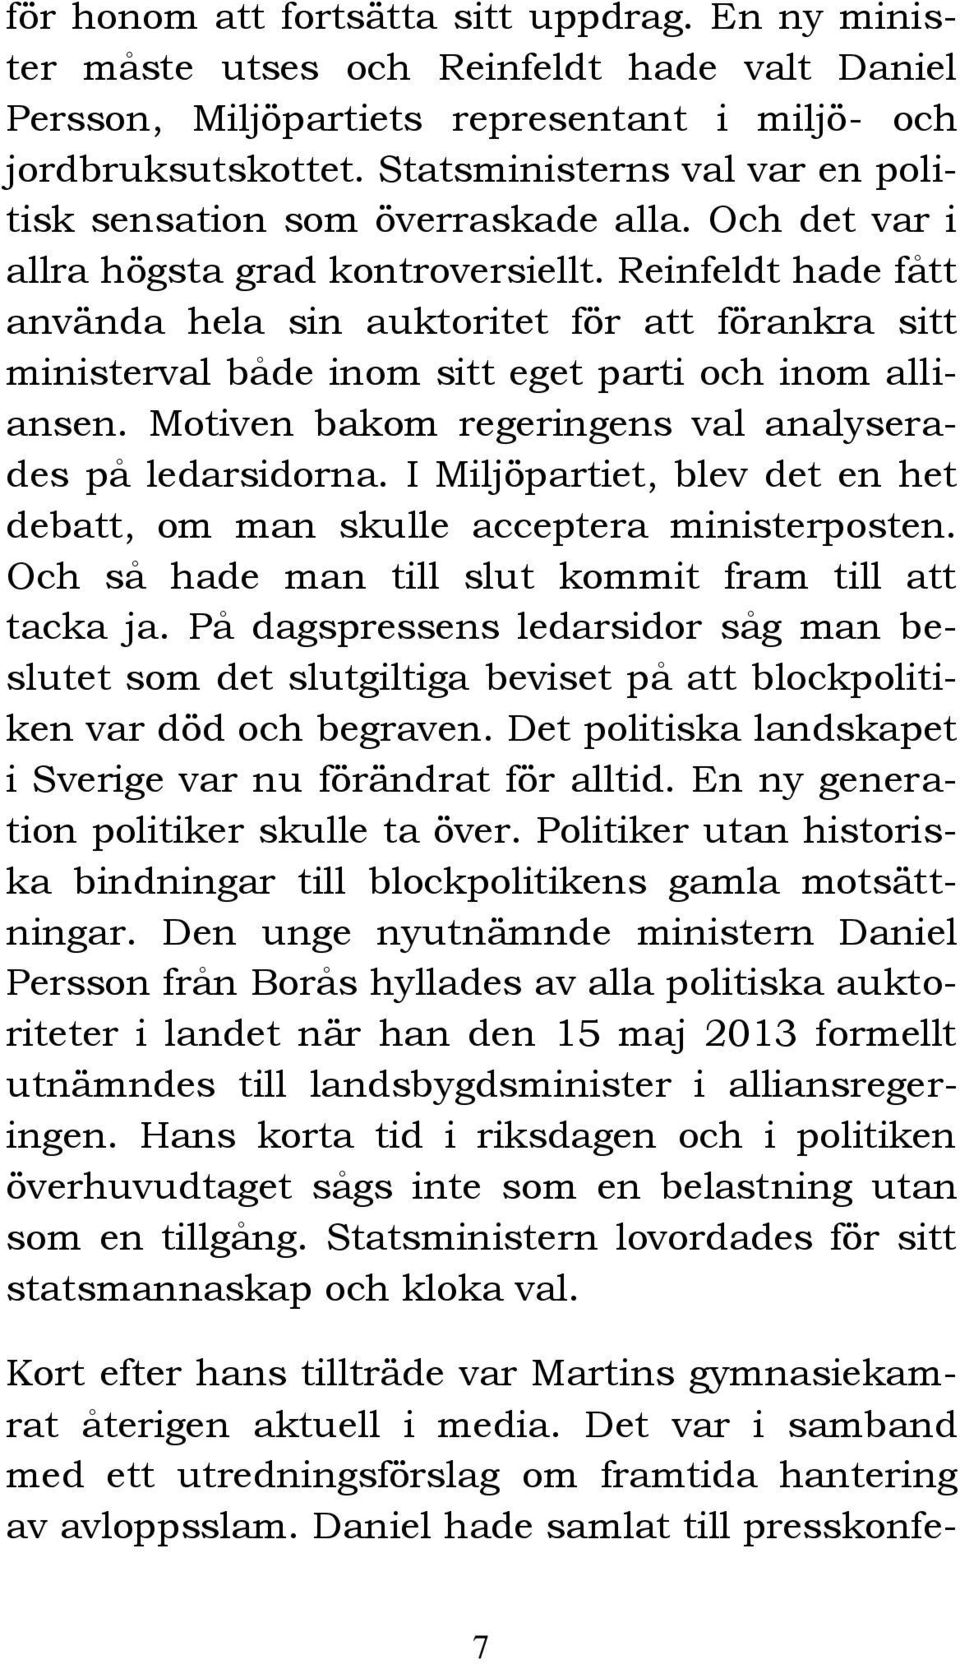 Reinfeldt hade fått använda hela sin auktoritet för att förankra sitt ministerval både inom sitt eget parti och inom alliansen. Motiven bakom regeringens val analyserades på ledarsidorna.